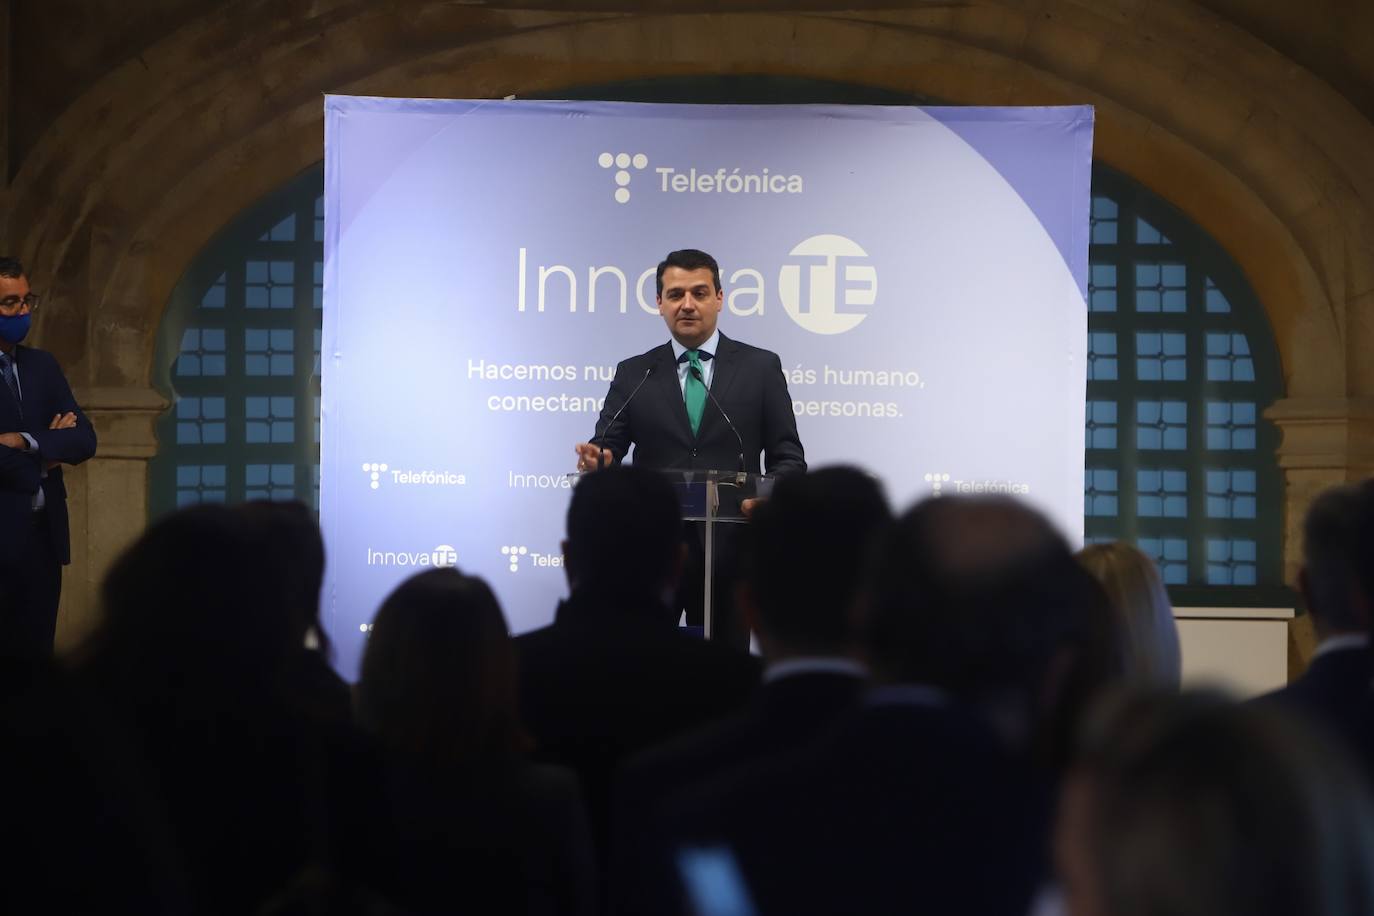 La inauguración de la muestra InnovaTe de Telefónica en Córdoba, en imágenes